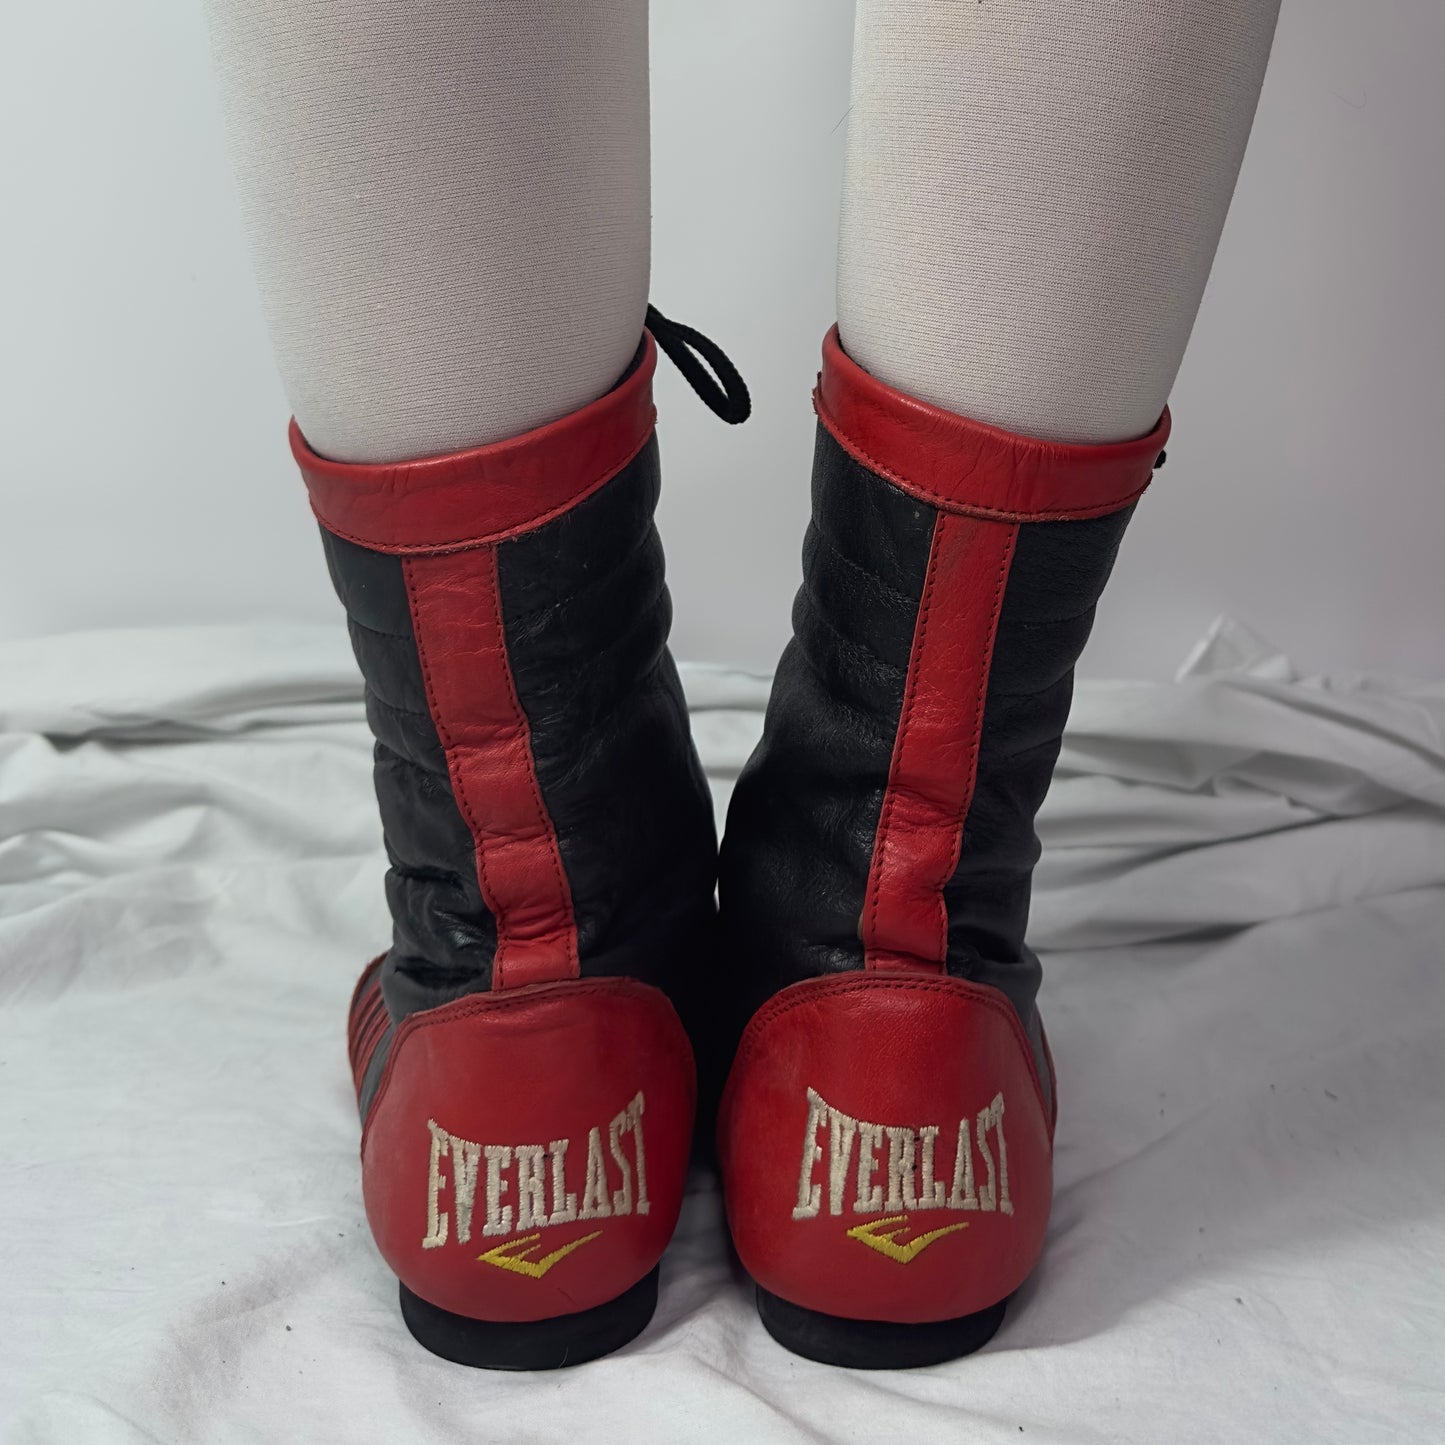 Everlast Vintage Boxing Wrestling Boots